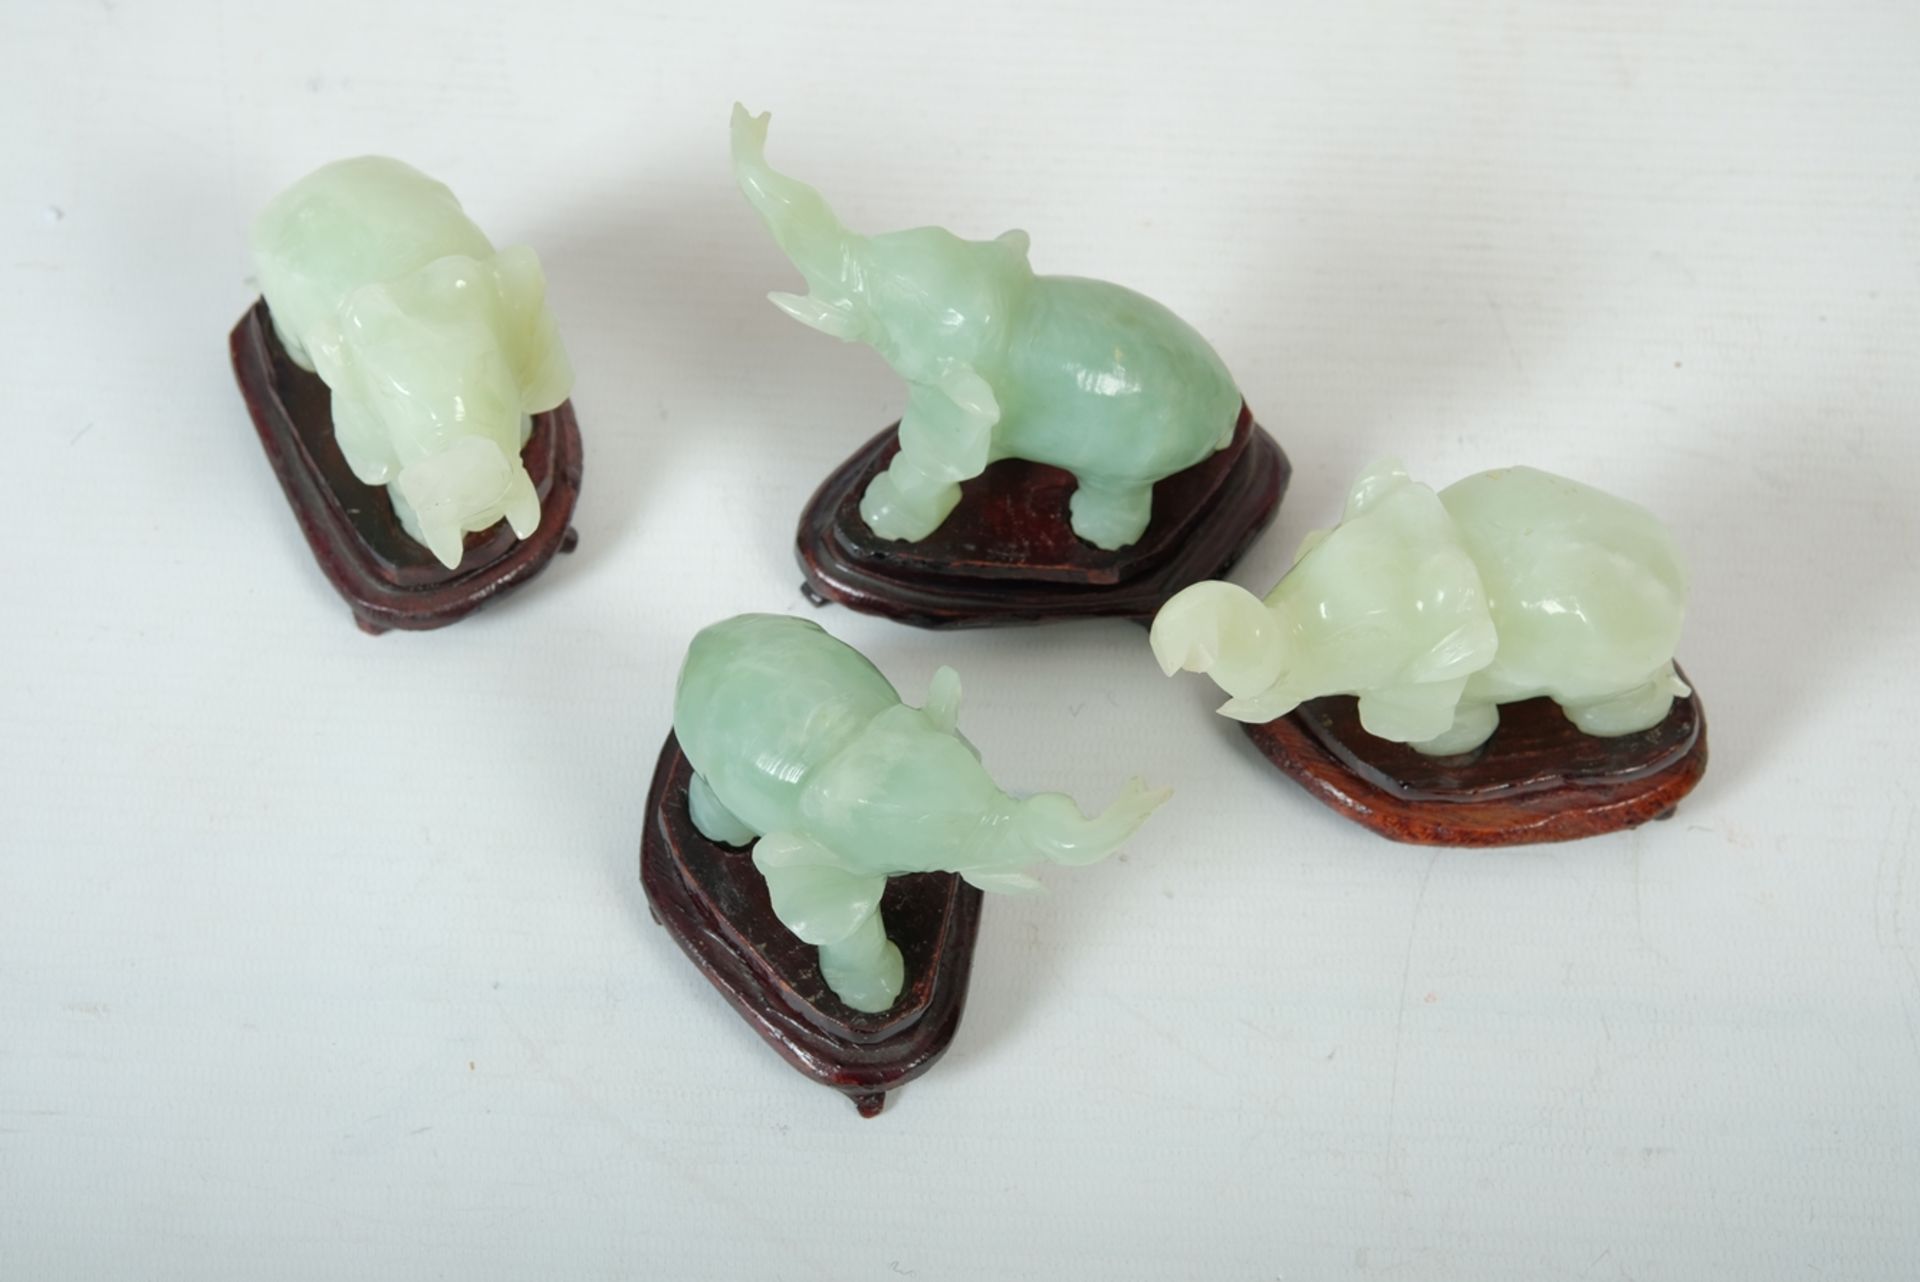 Elefanten aus Jade, vier Stück, China. Ein Elefant bestoßen. - Bild 2 aus 2